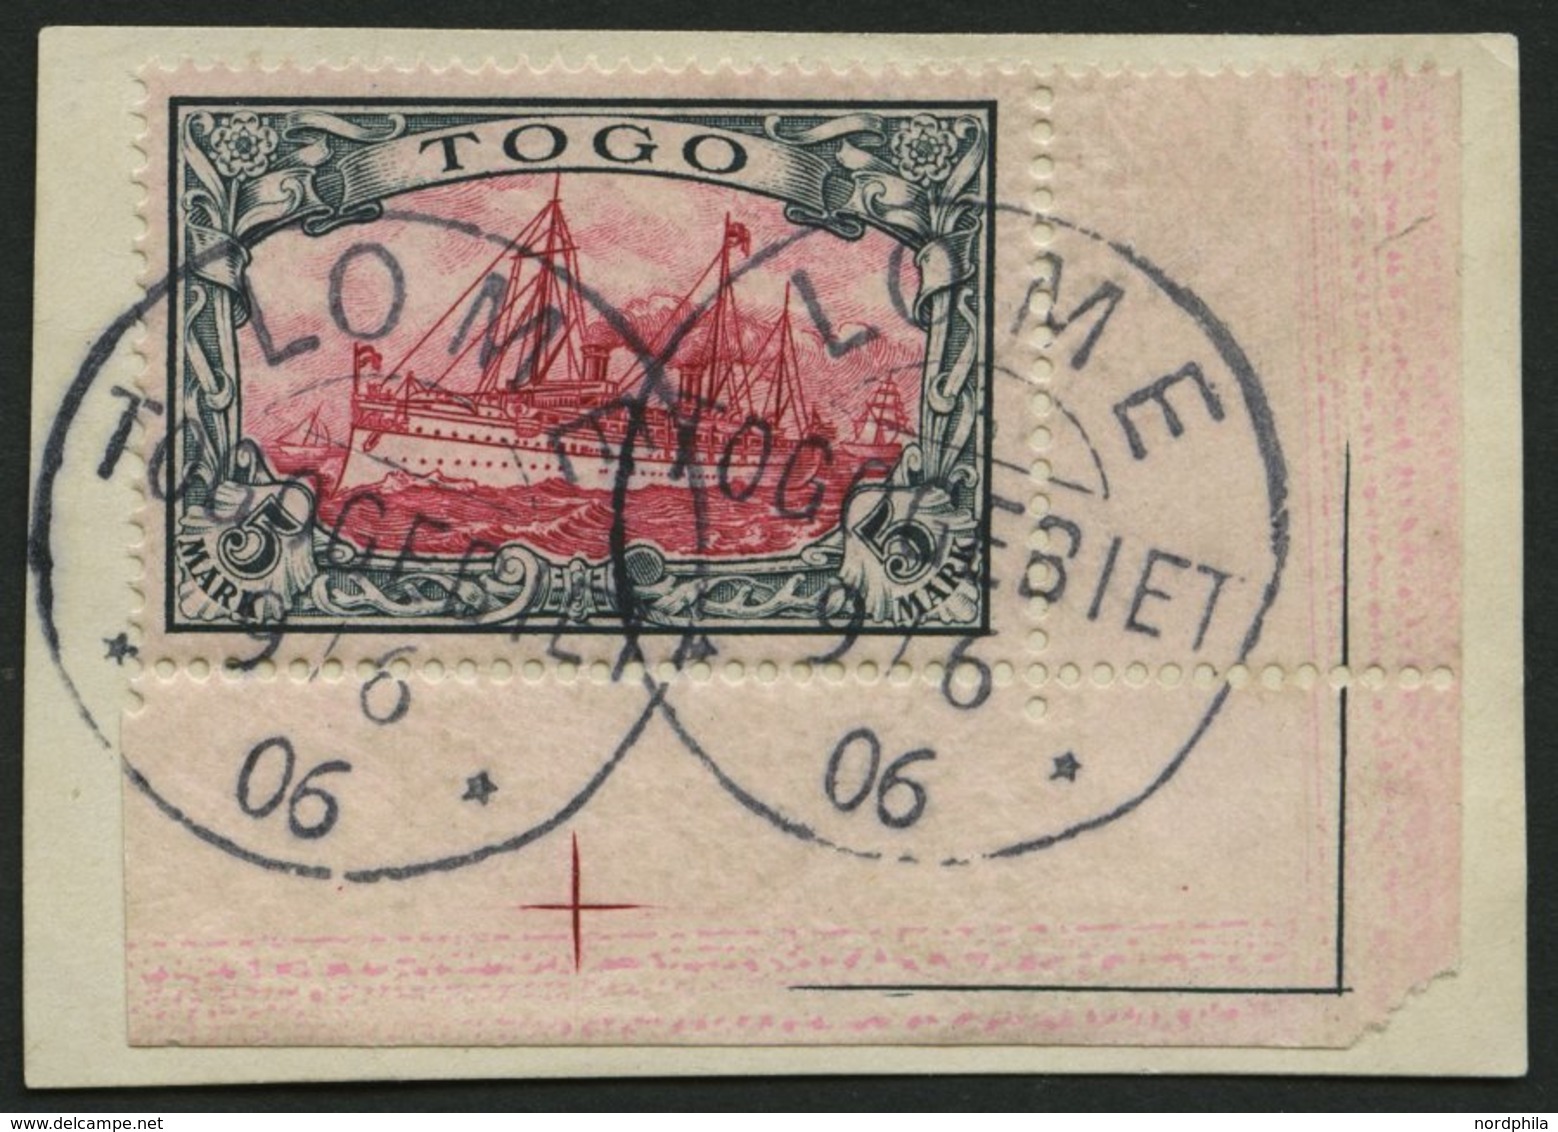 TOGO 19 BrfStk, 1900, 5 M. Grünschwarz/bräunlichkarmin, Ohne Wz., Untere Rechte Bogenecke, Kabinettbriefstück - Togo